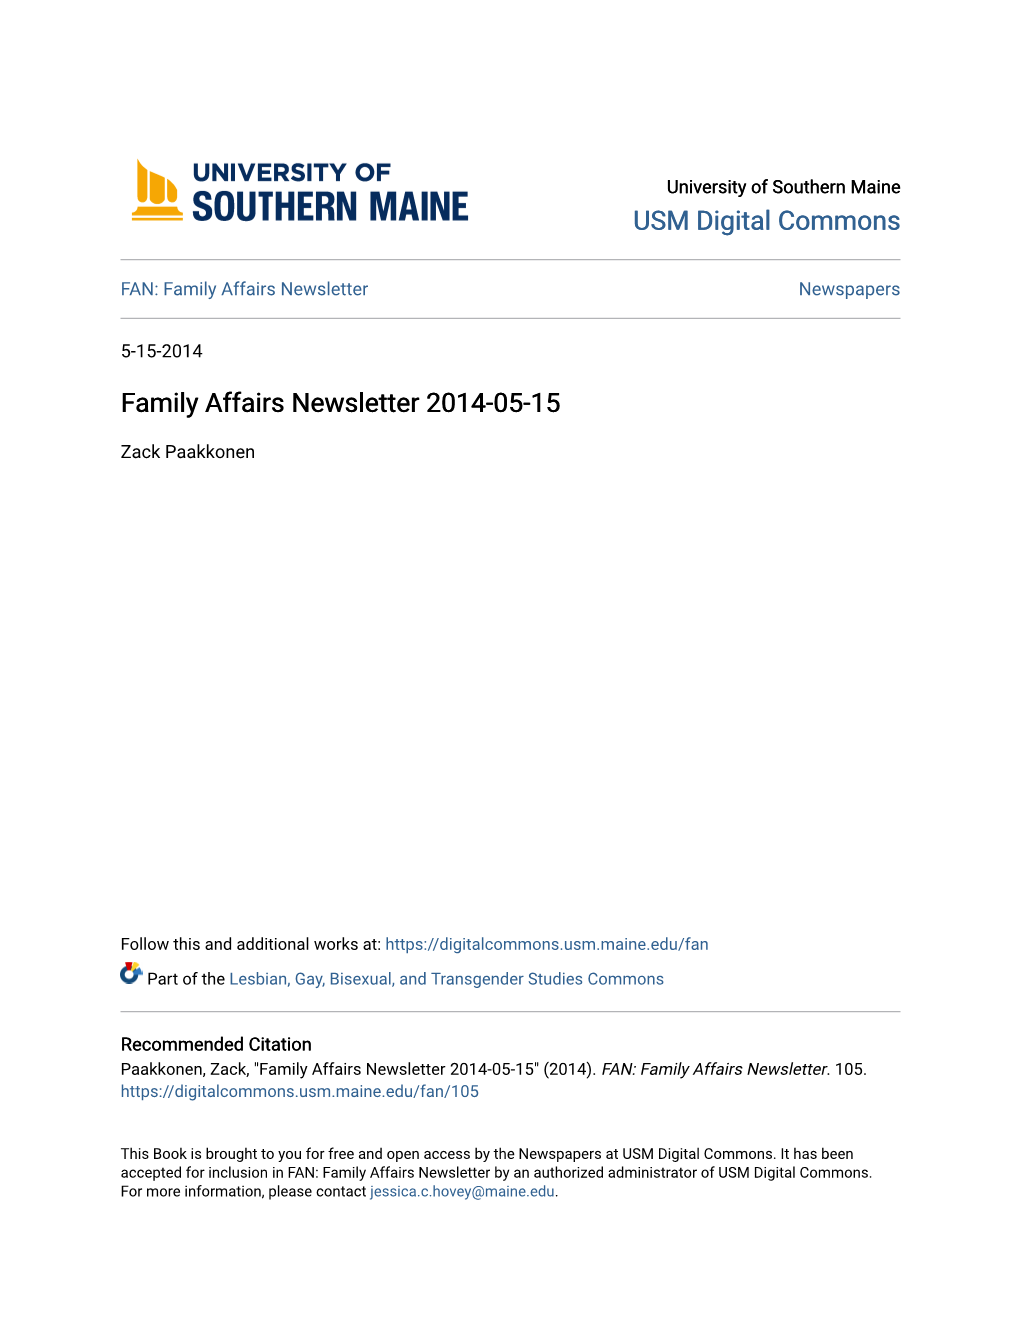 Family Affairs Newsletter 2014-05-15